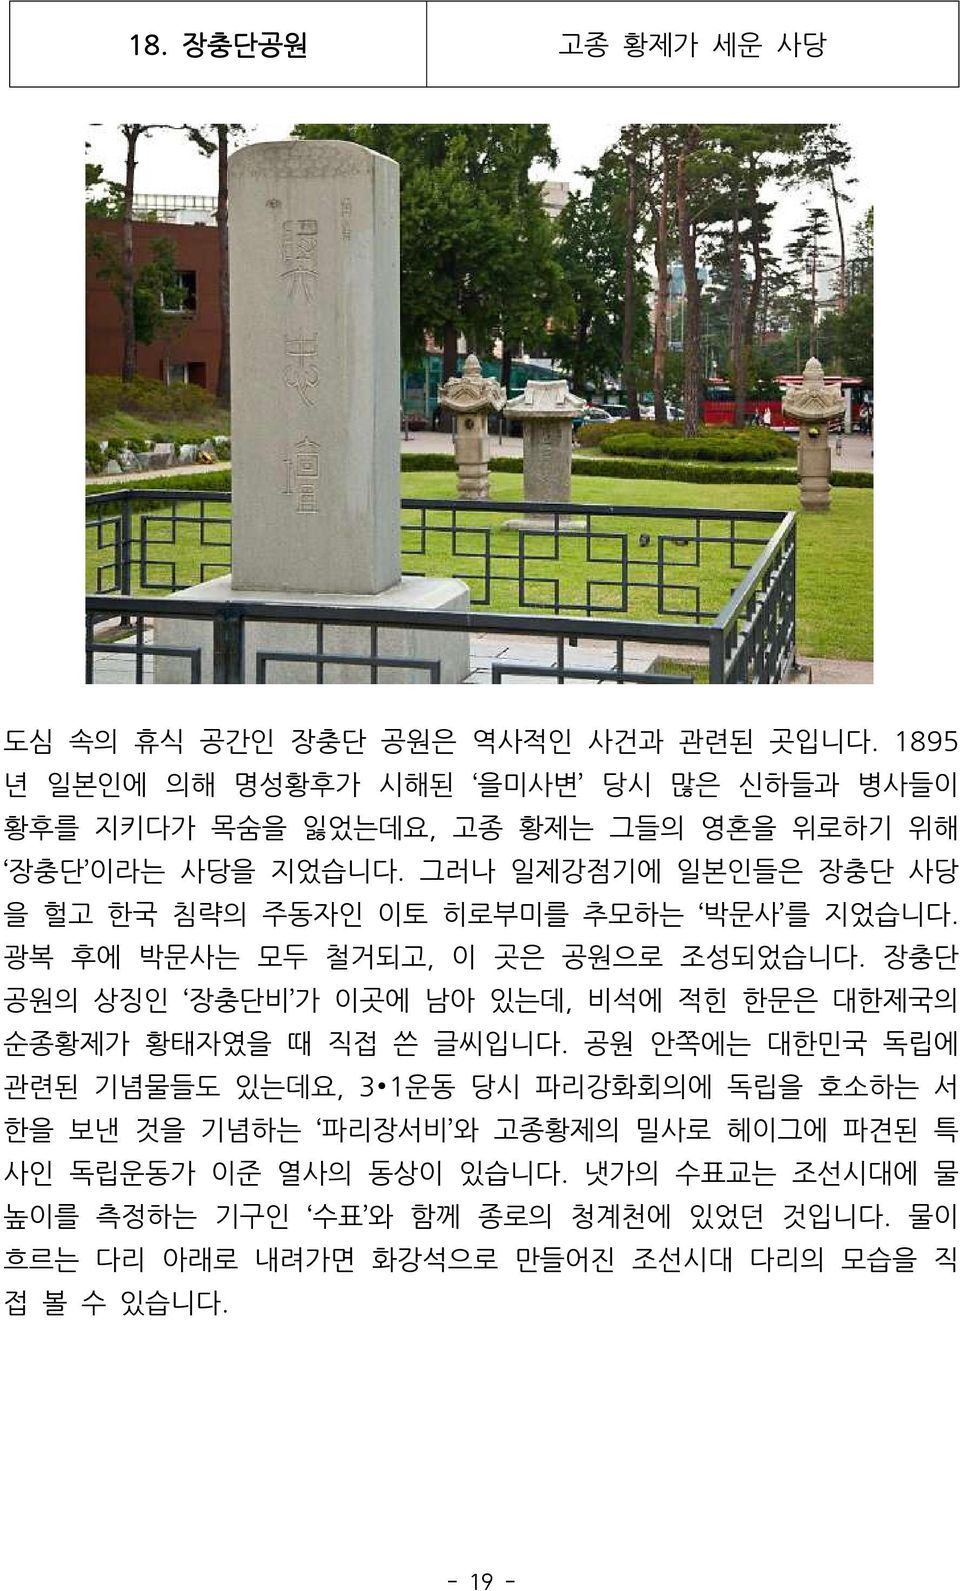 그러나 일제강점기에 일본인들은 장충단 사당 을 헐고 한국 침략의 주동자인 이토 히로부미를 추모하는 박문사 를 지었습니다. 광복 후에 박문사는 모두 철거되고, 이 곳은 공원으로 조성되었습니다.